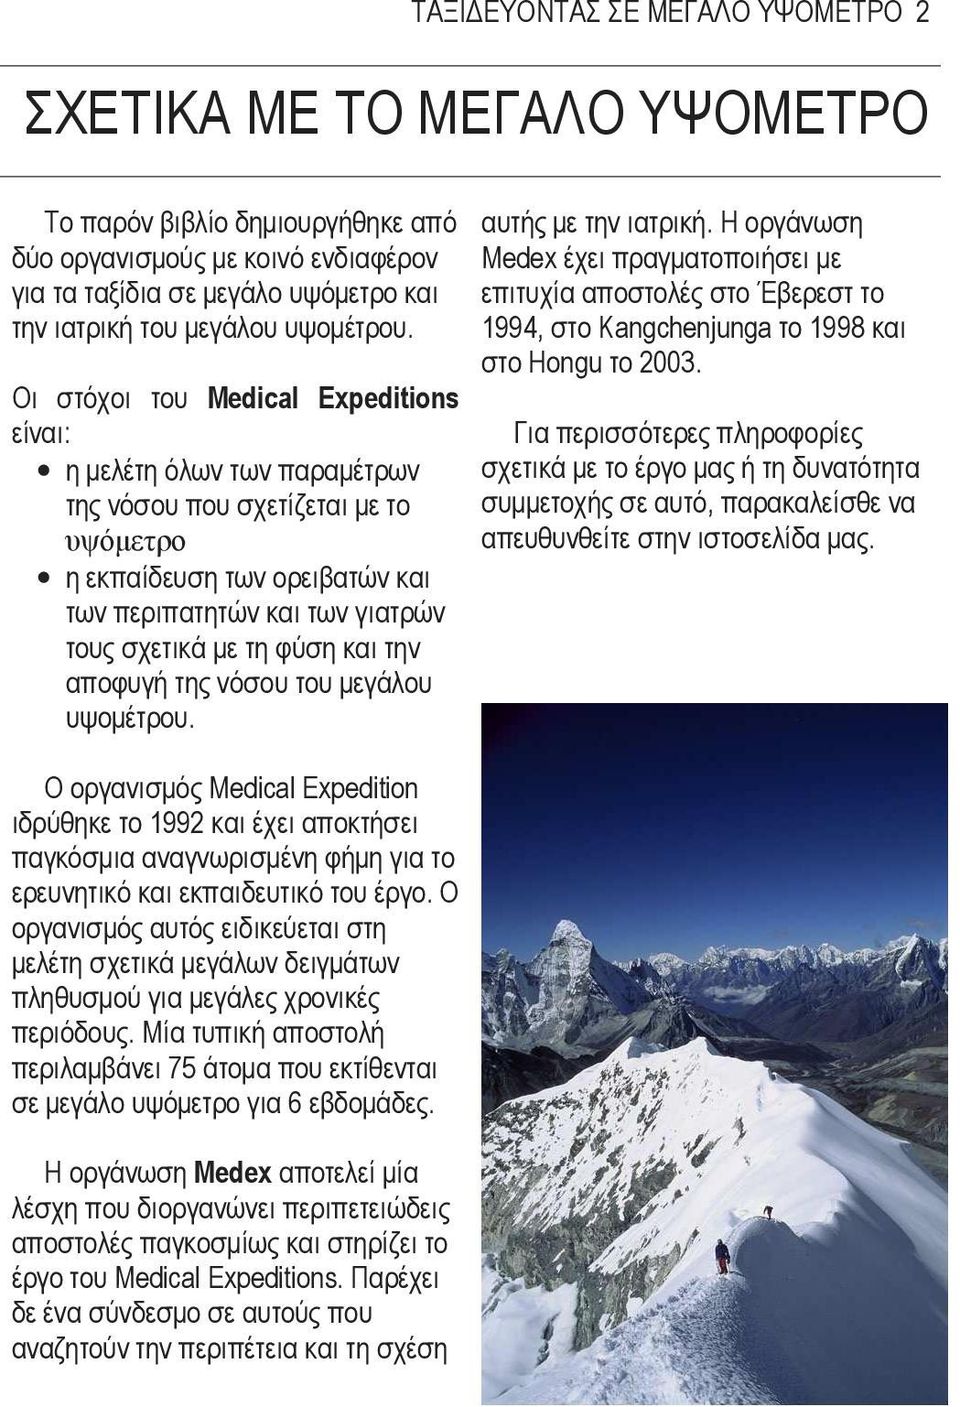 Οι στόχοι του Medical Expeditions είναι: η µελέτη όλων των παραµέτρων της νόσου που σχετίζεται µε το υψόµετρο η εκπαίδευση των ορειβατών και των περιπατητών και των γιατρών τους σχετικά µε τη φύση